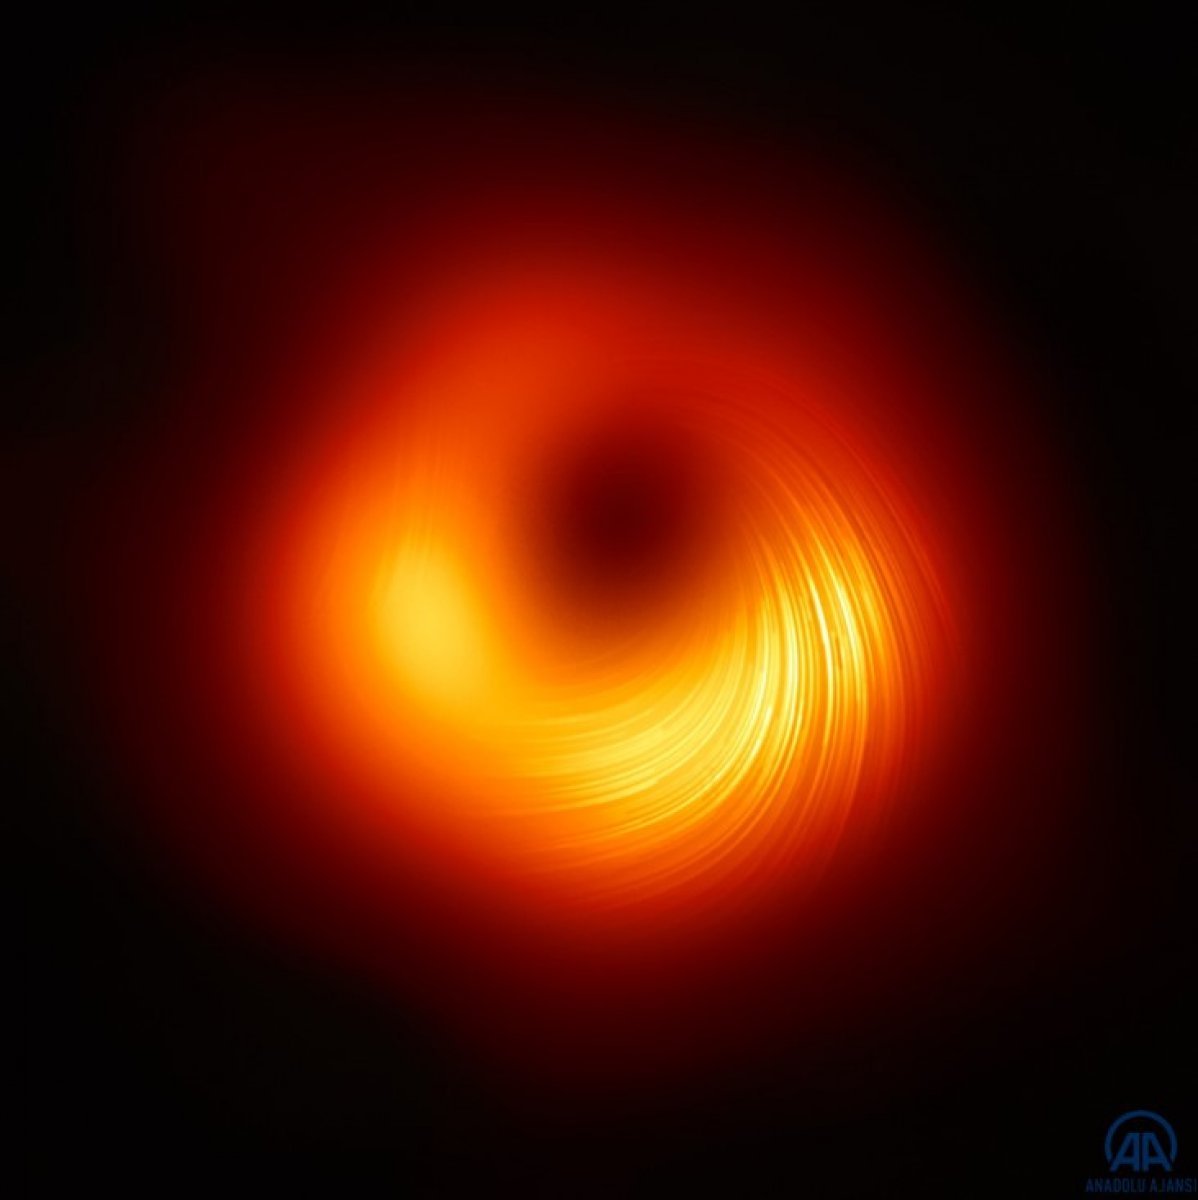 Samanyolu'ndaki kara delik ilk kez görüntülendi